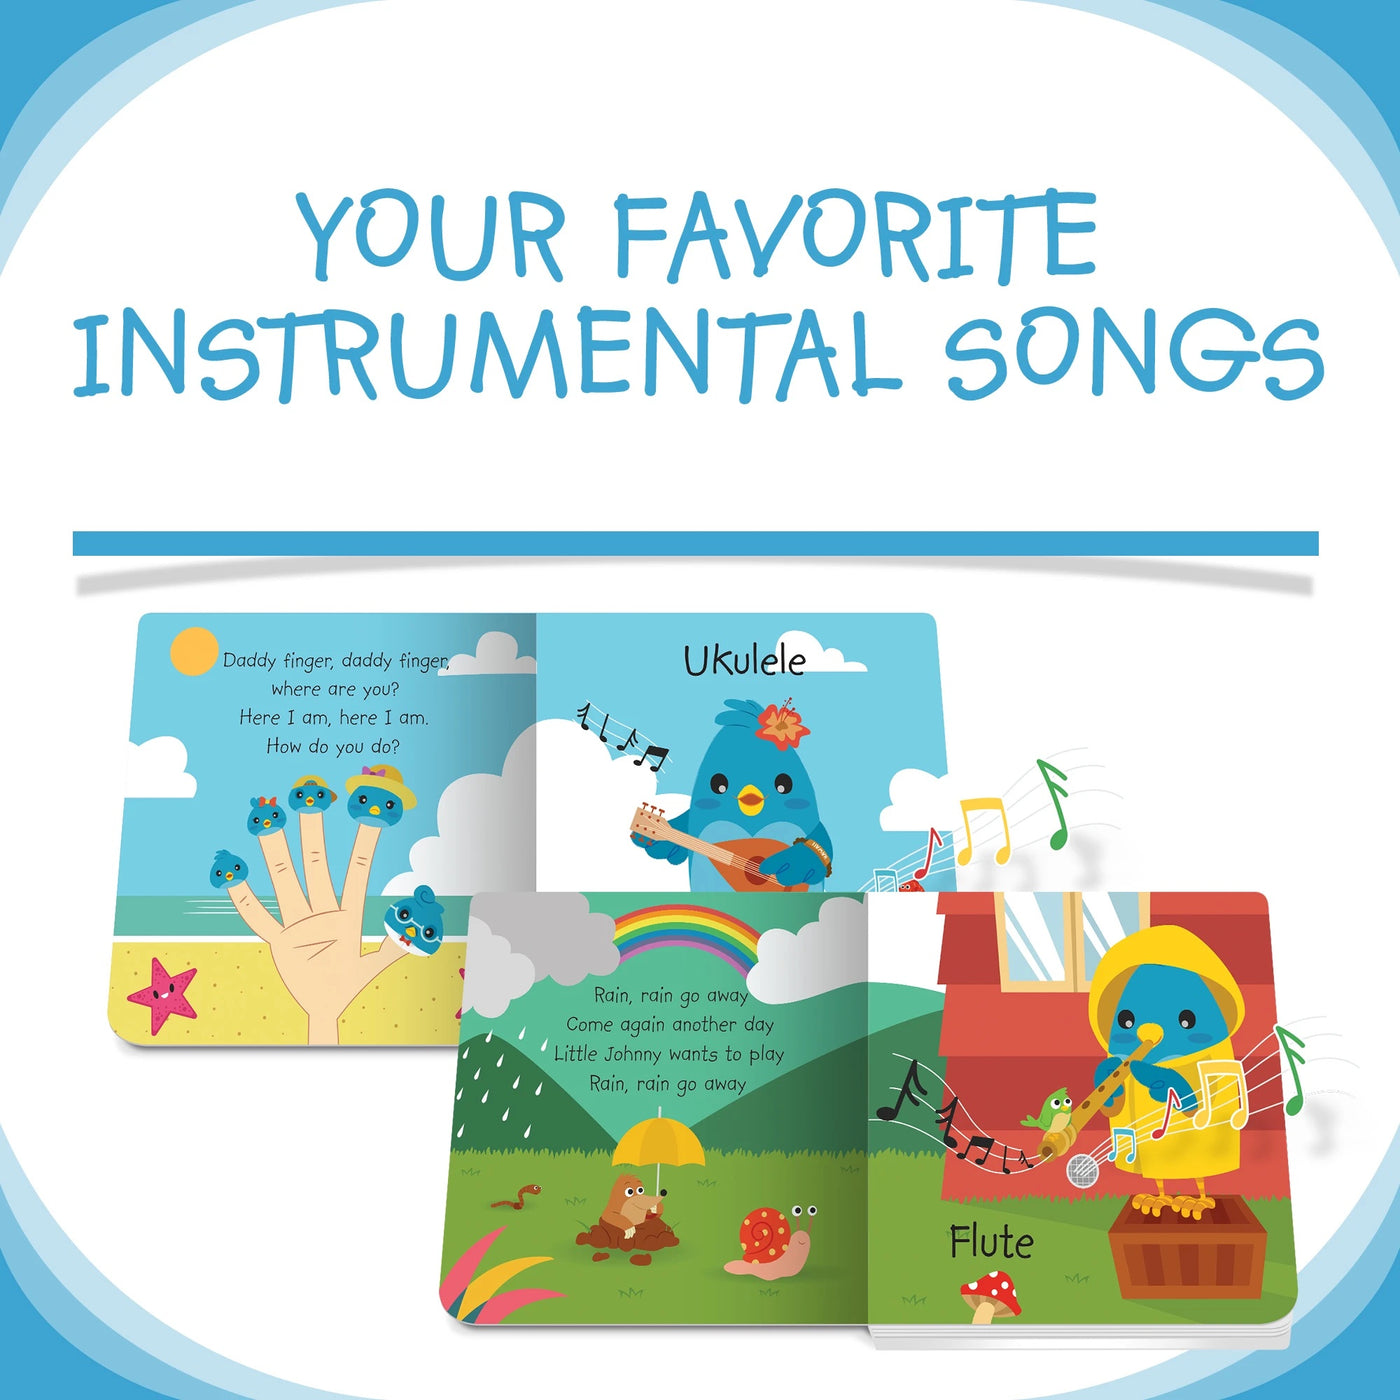 DITTY BIRD - INSTRUMENTAL CHILDREN'S SONGS